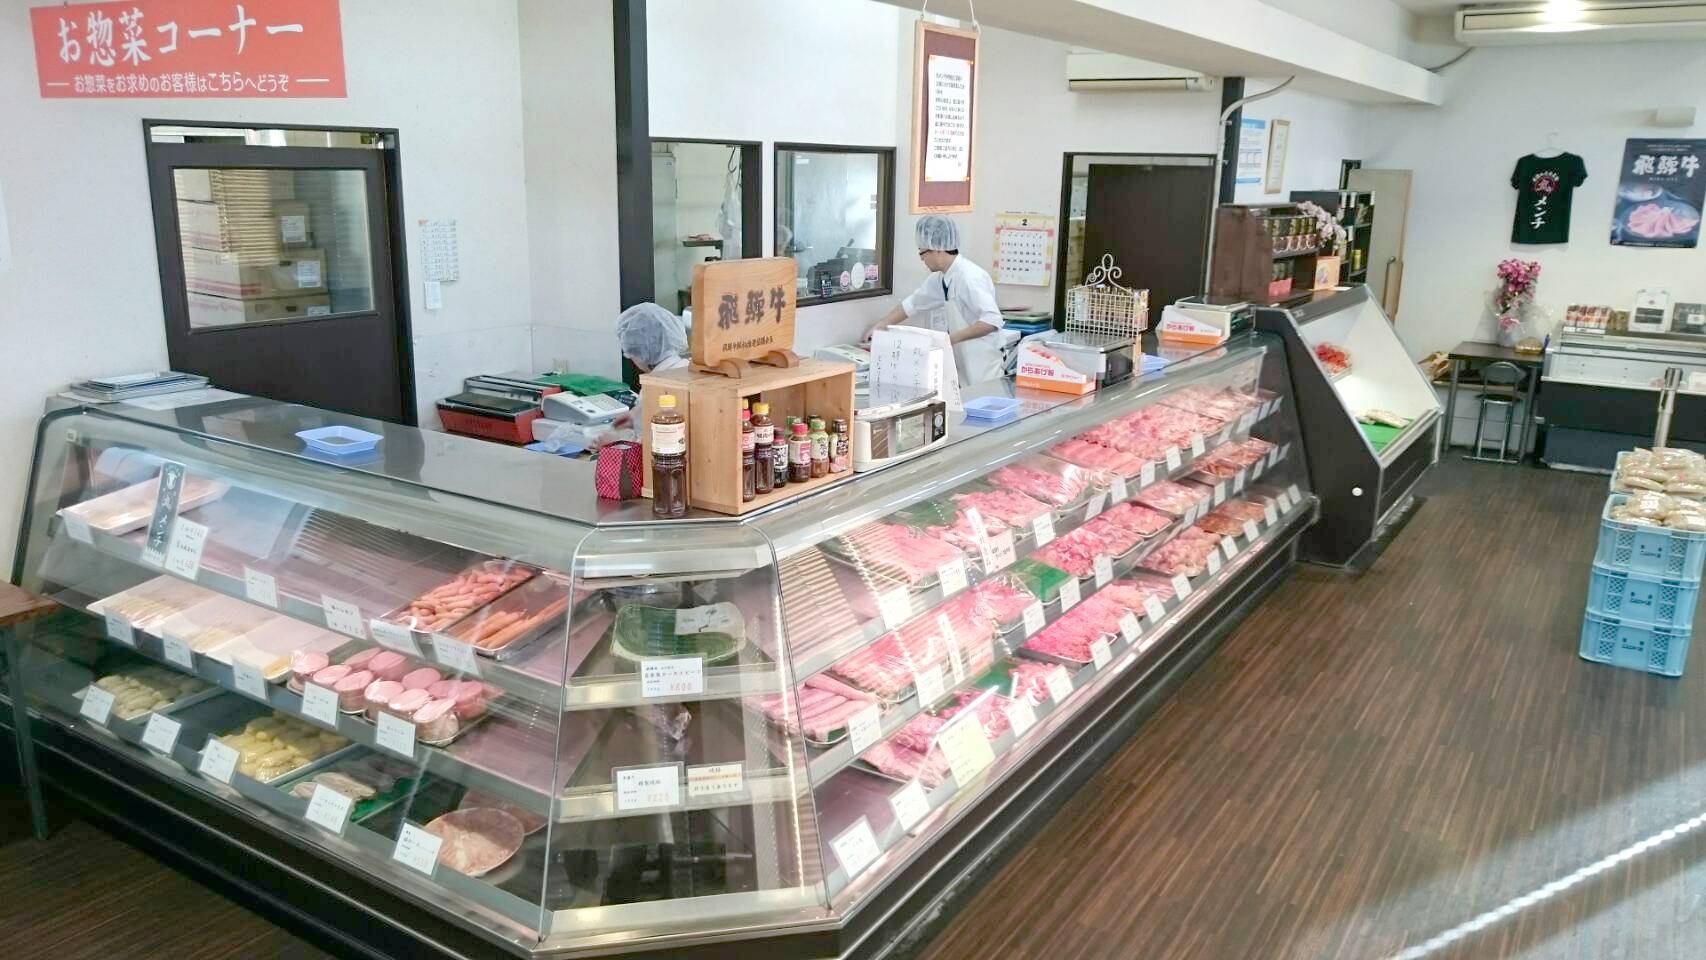 美濃加茂市の精肉店 肉のかた山 大人気の丸メンチをはじめ美味しいお肉をお手頃価格で